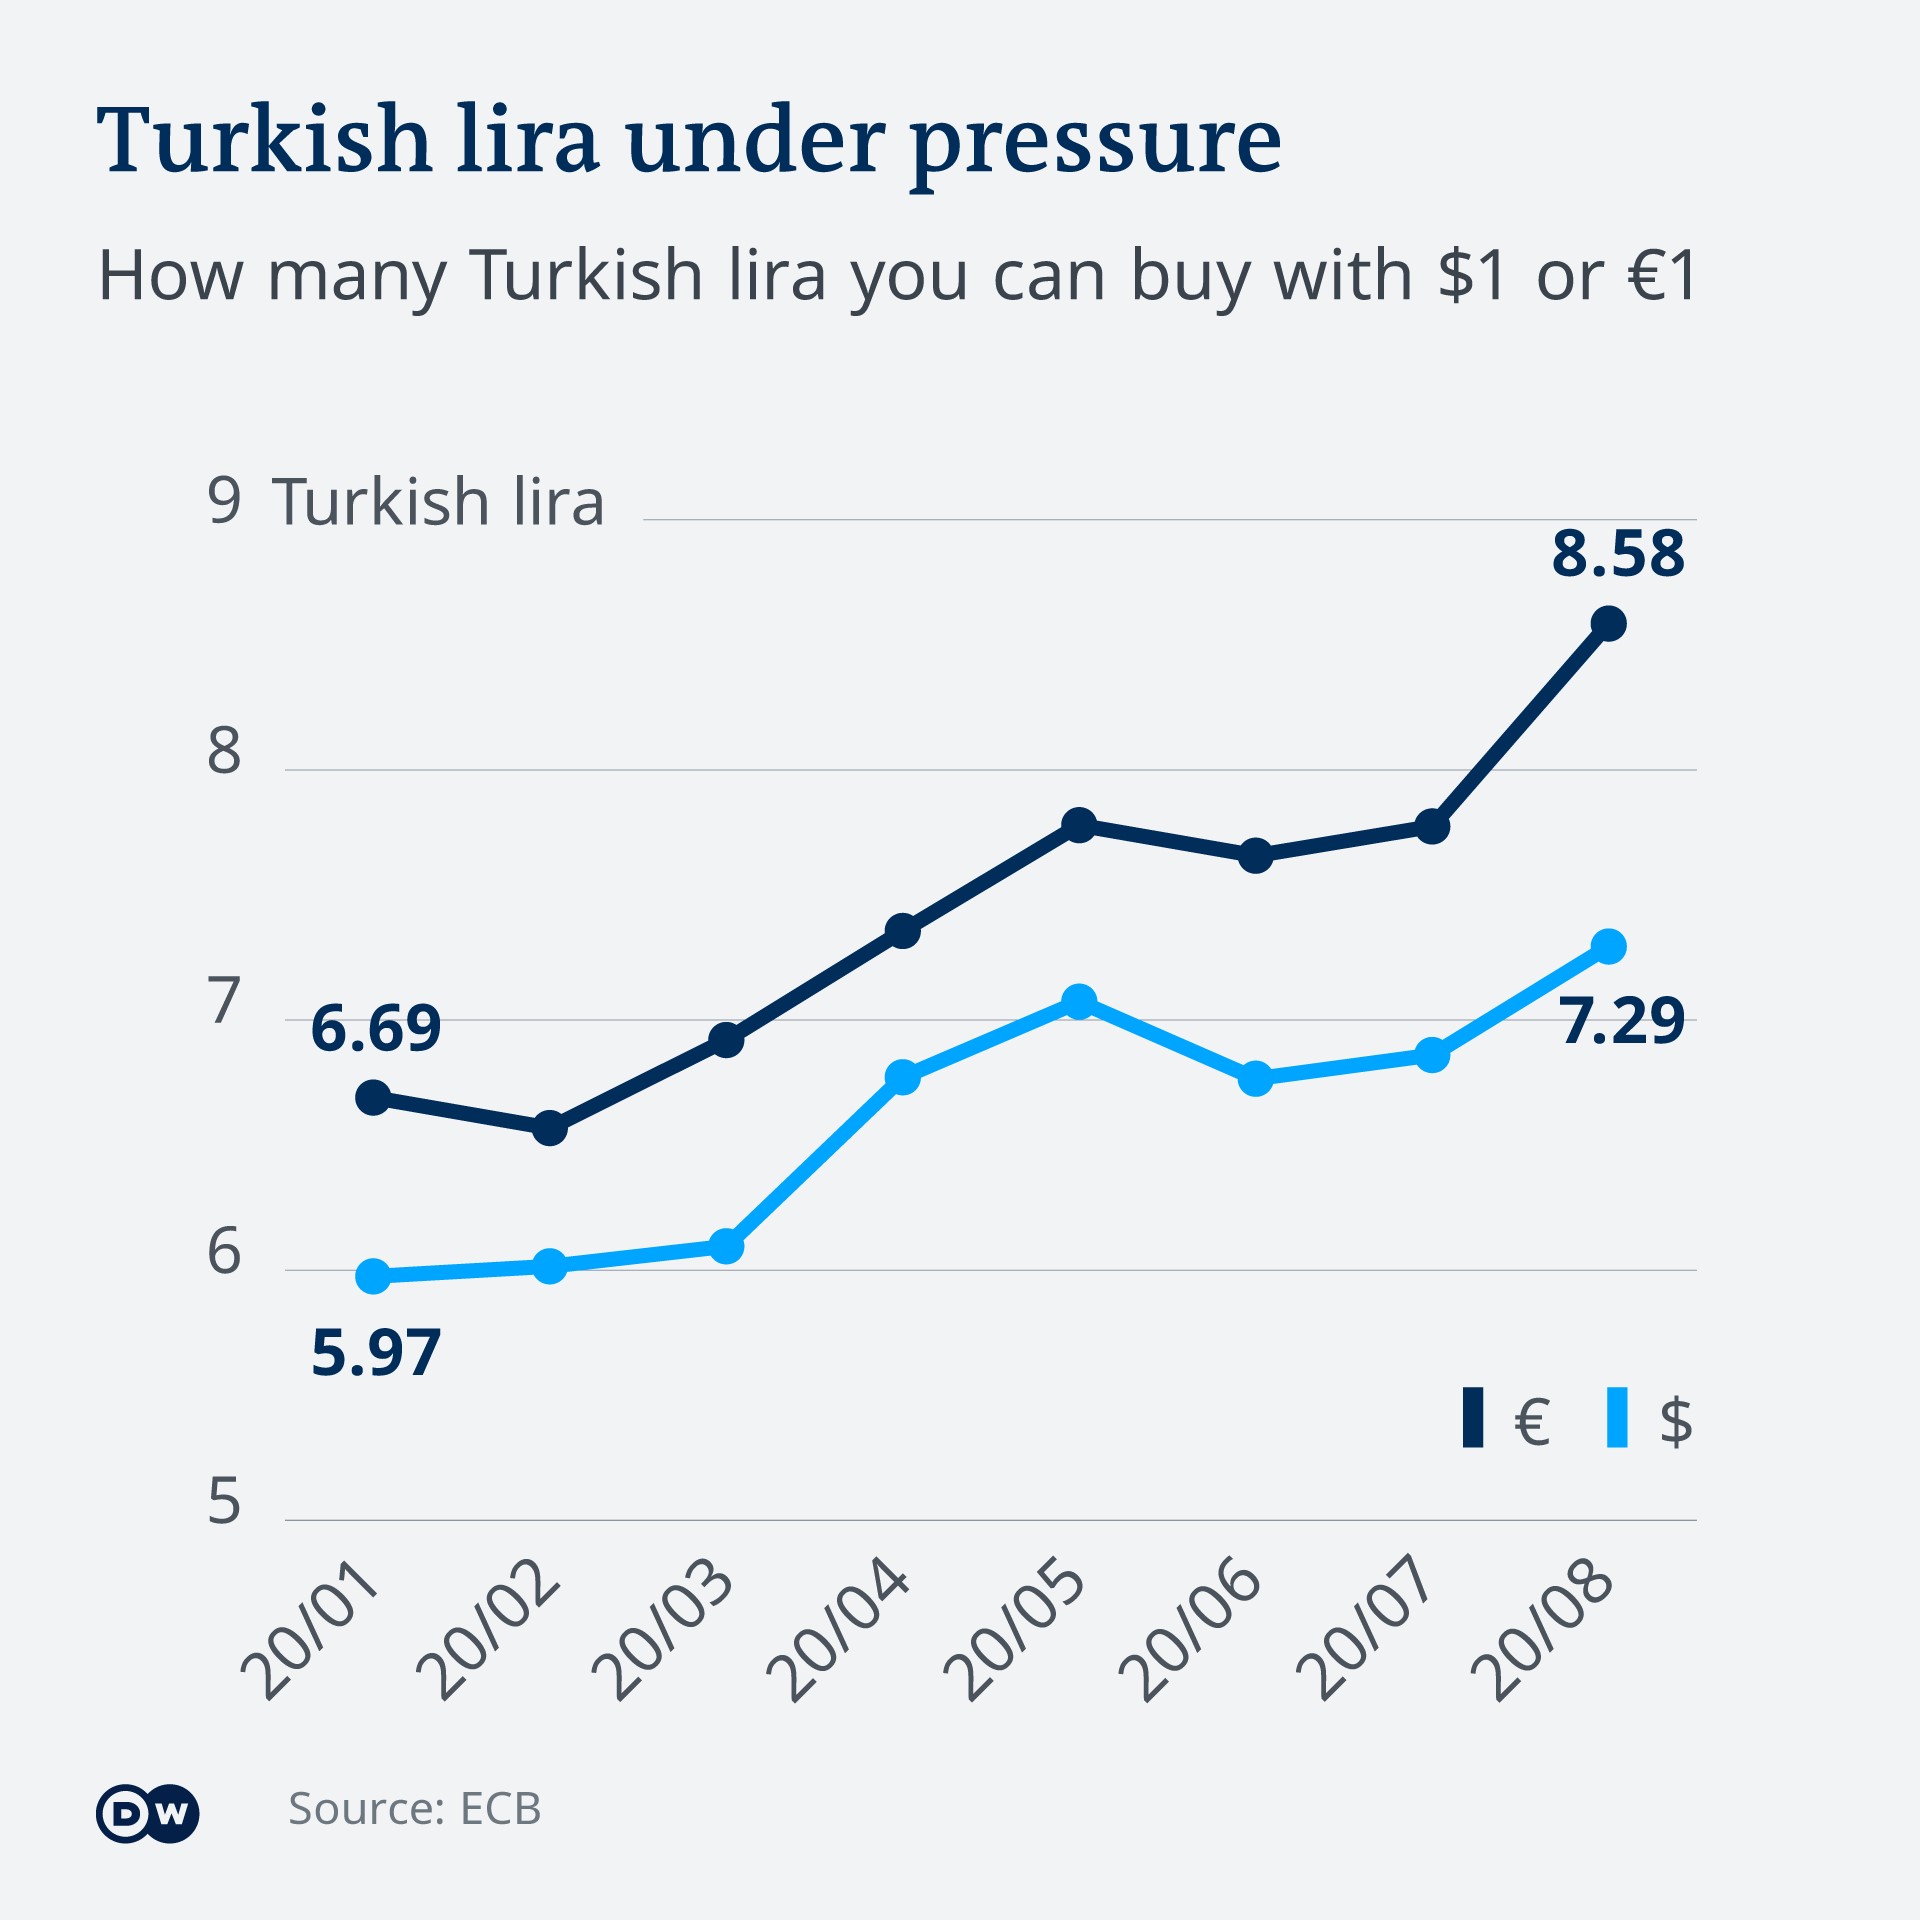 H Ισοτιμία της Τουρκικής Λίρας με το Ευρώ (2020). Πηγή: www.ecb.europa.eu